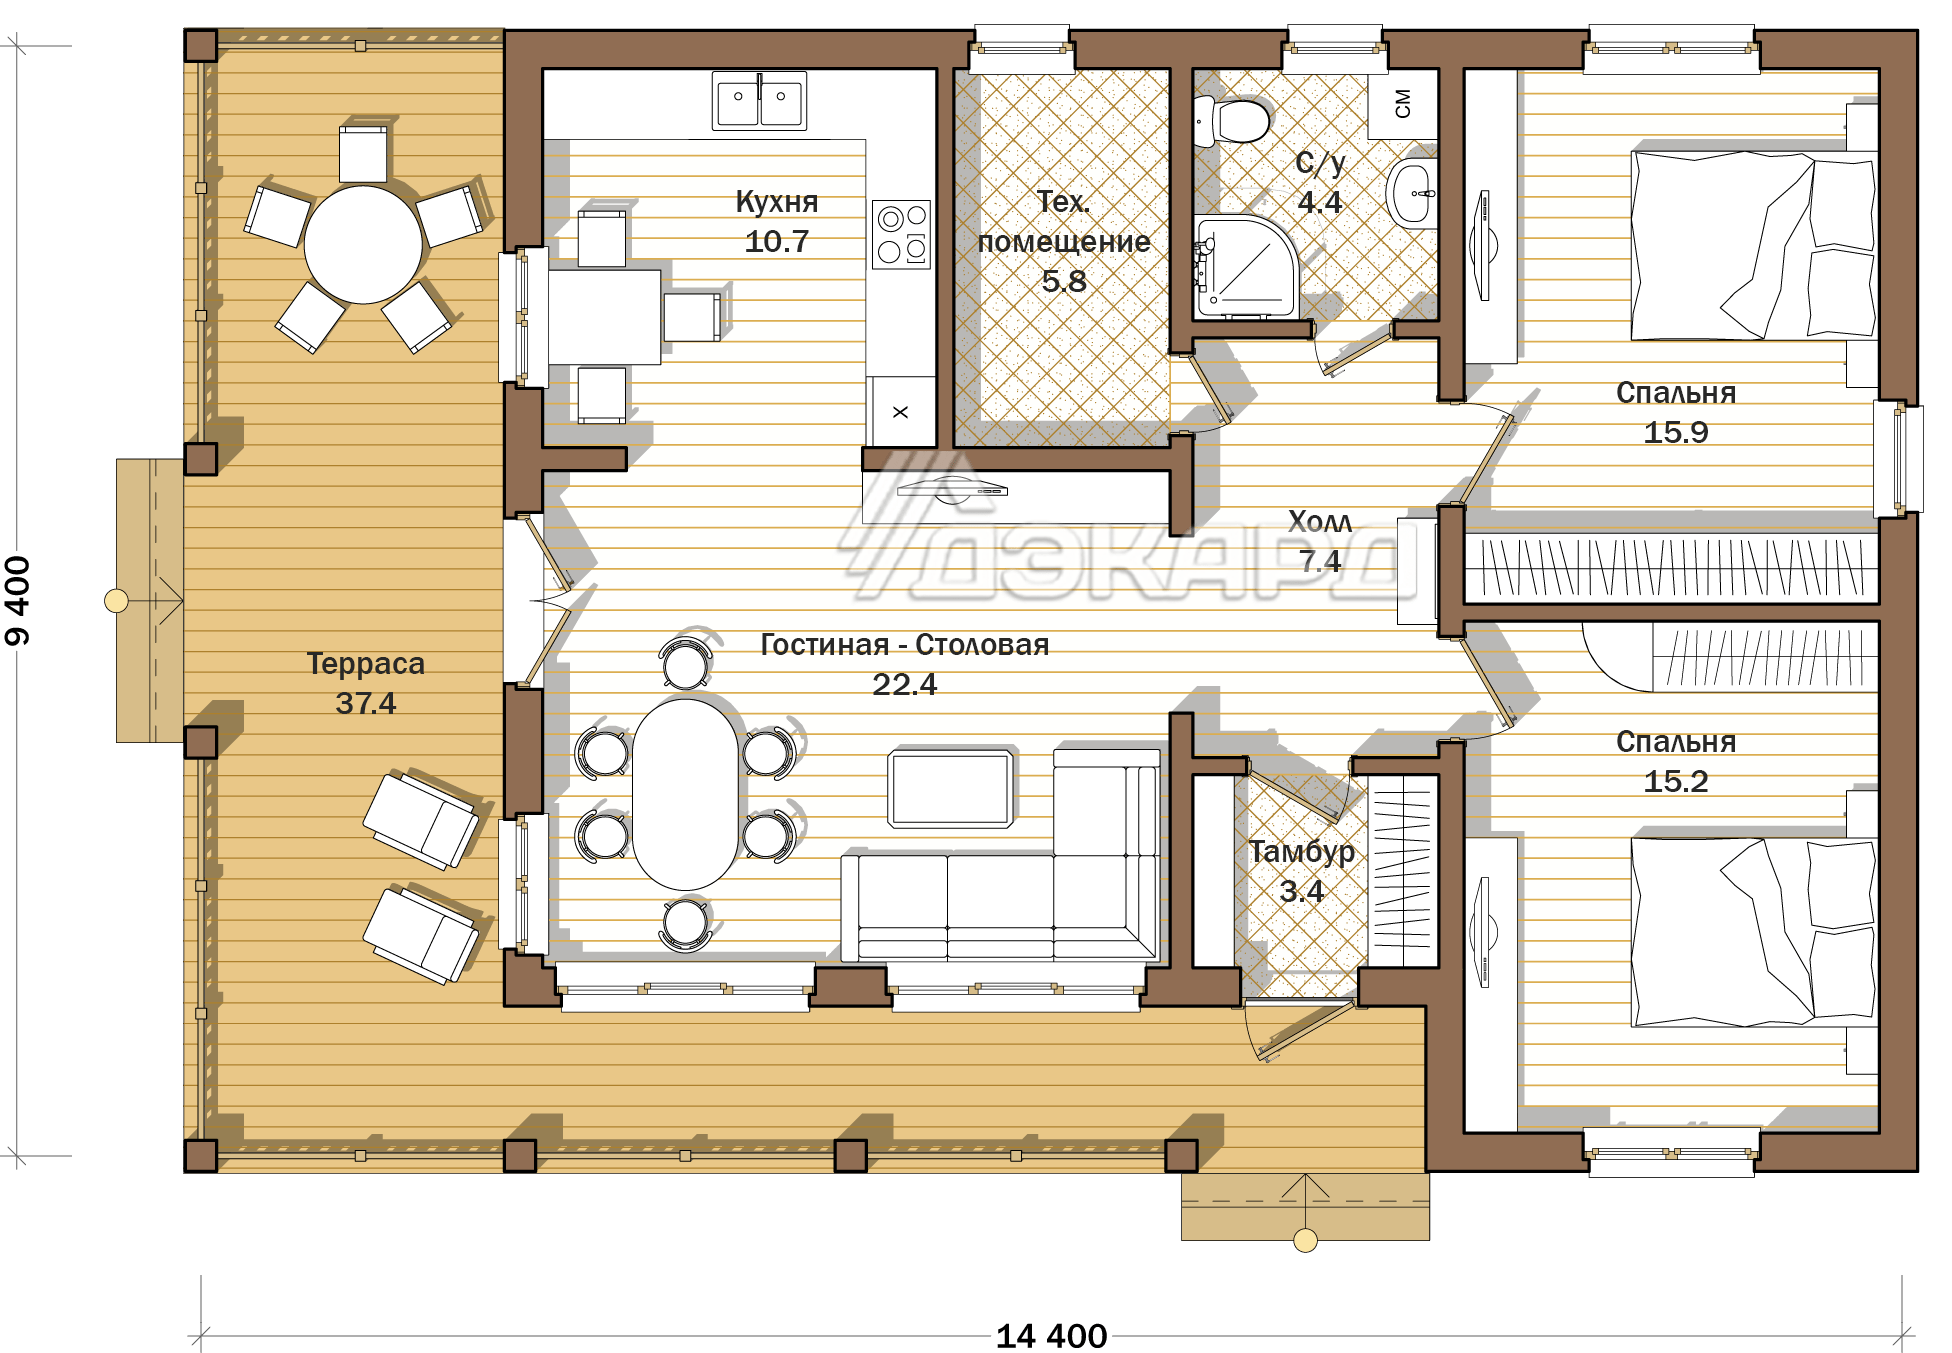 Идеальный проект дома. Планировки одноэтажного каркасника. Схема небольшого каркасного дома одноэтажного. Планировки одноэтажных домов. Распланировка одноэтажного дома.